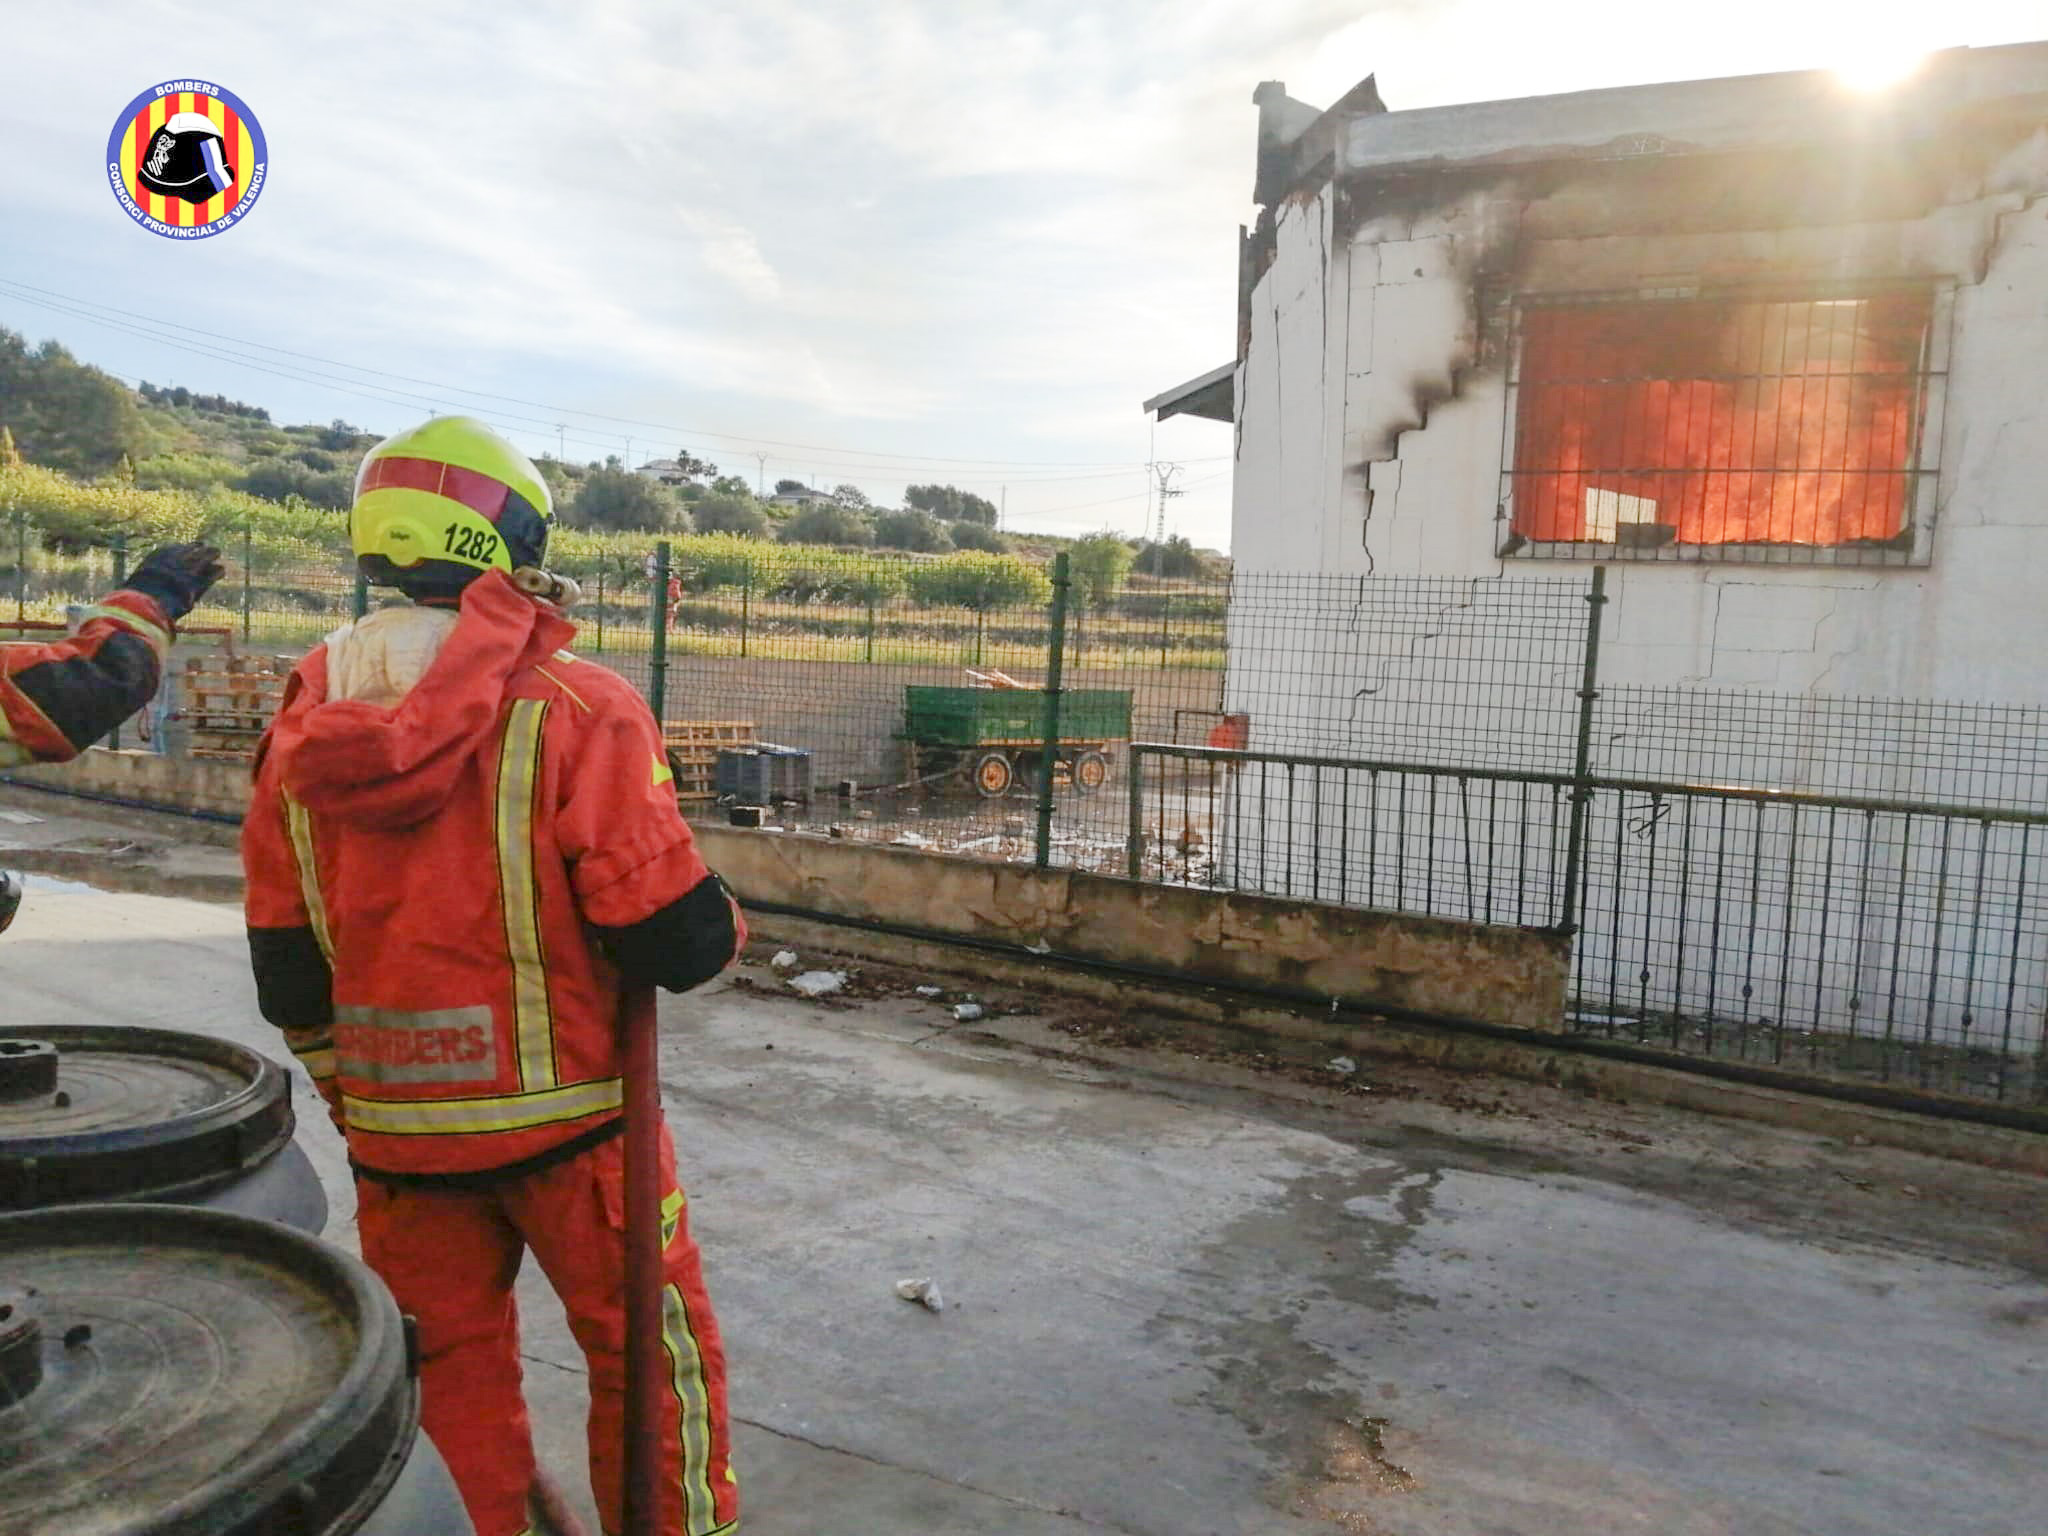 Incendi en una empresa de fustes El Periòdic d'Ontinyent - Noticies a Ontinyent